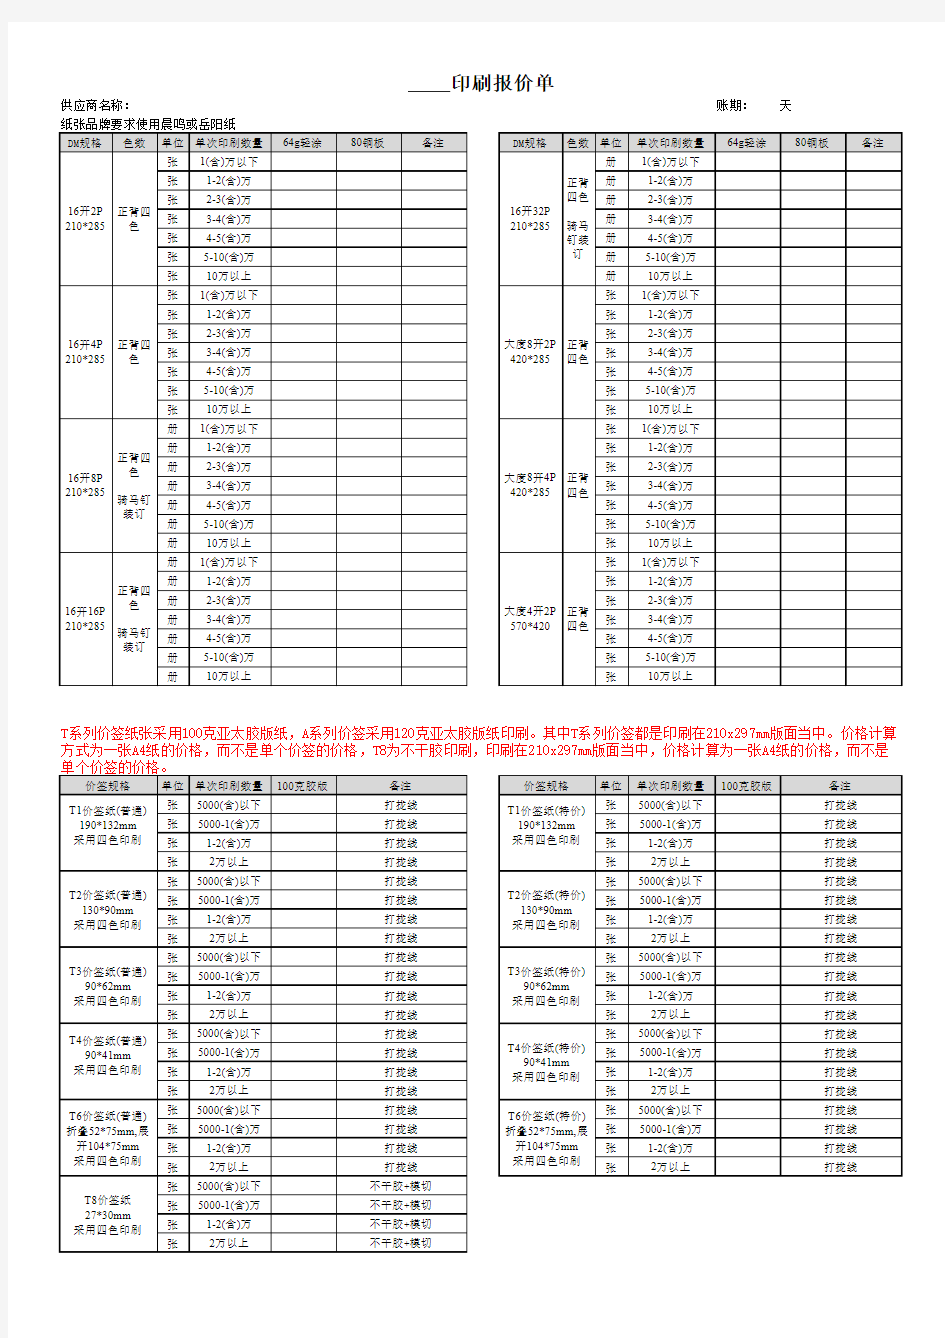 2013年印刷报价单(模板)